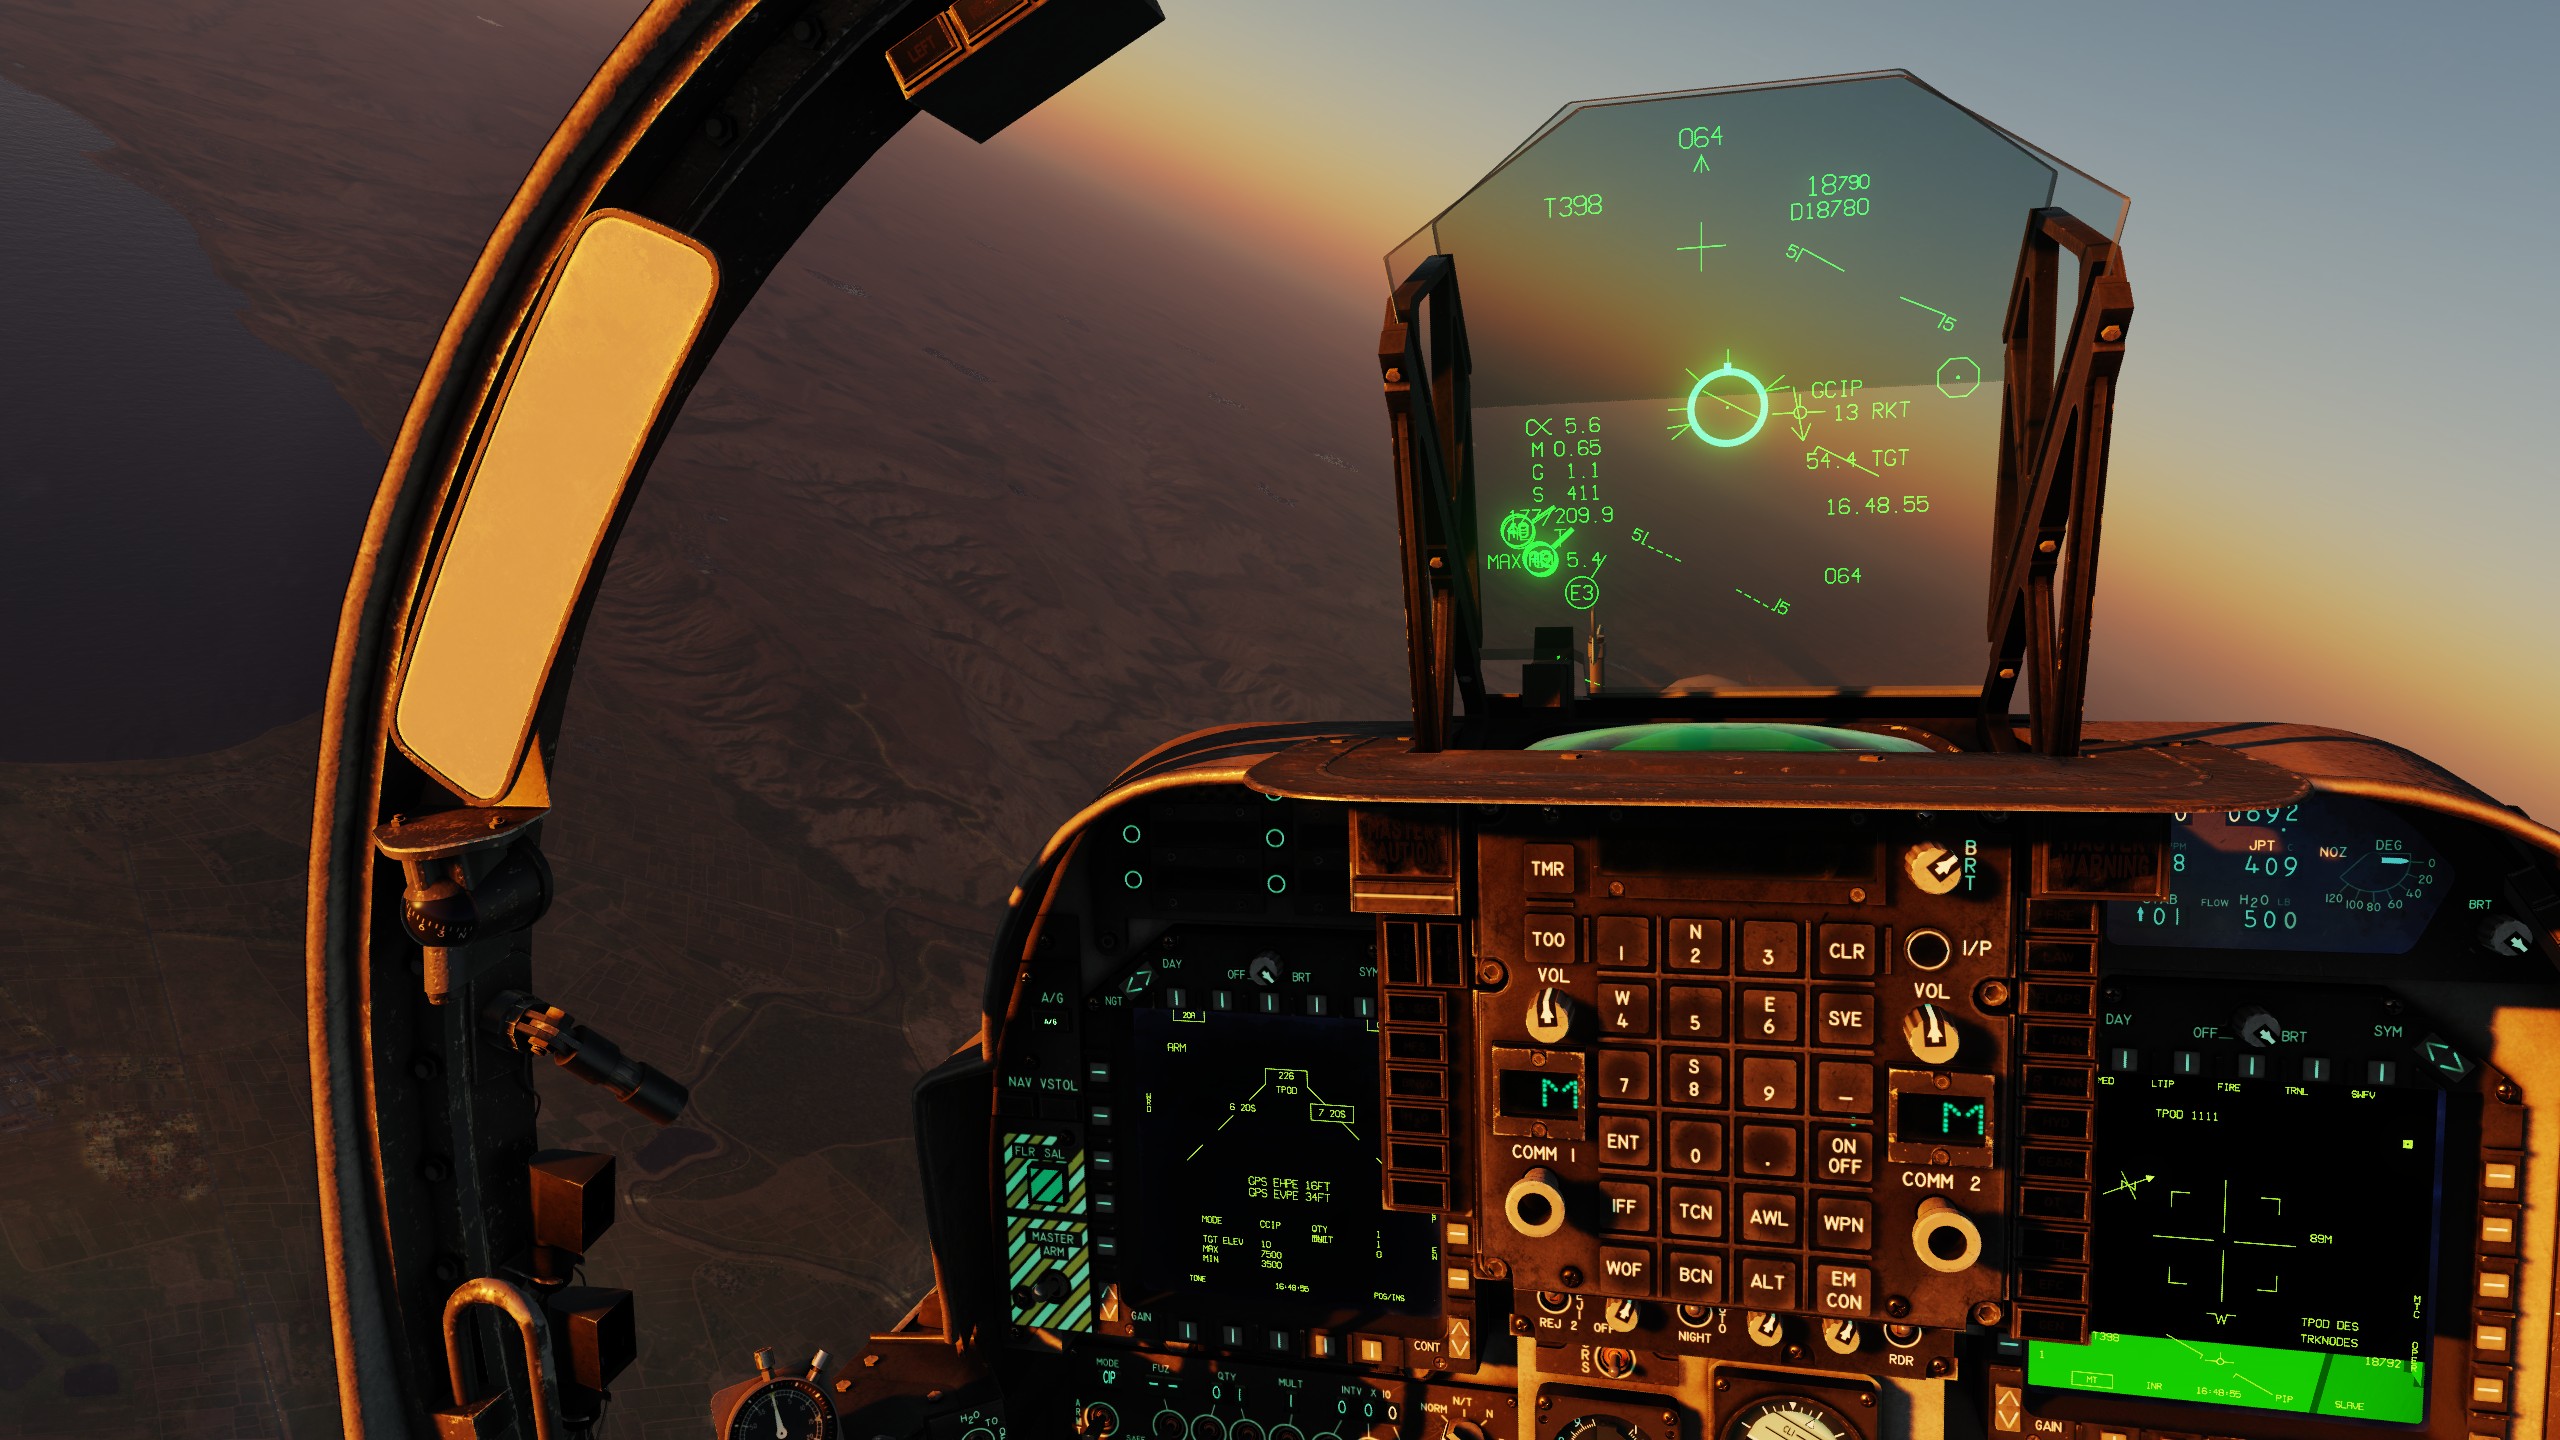 AV8B-NA Cockpit Displays - Readability at High Resolution - v1.0